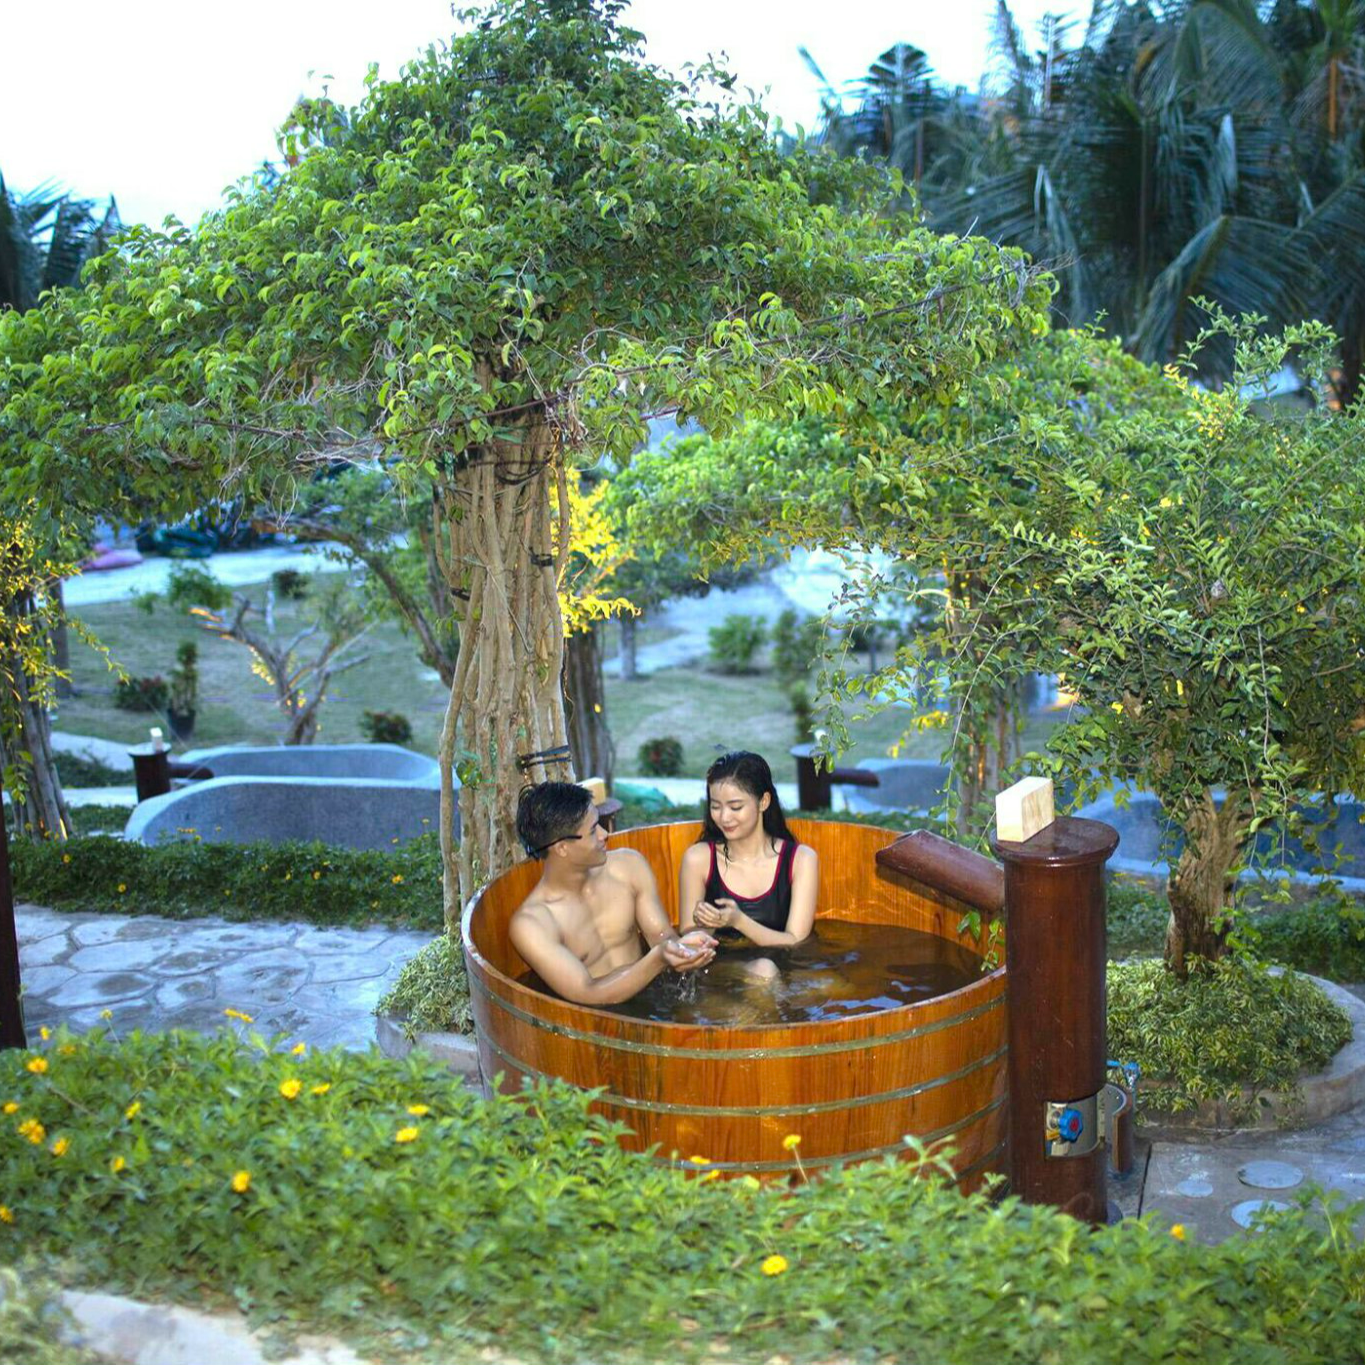 Vé Tắm Bùn Hòn Tằm & Tắm Biển - Merperle Hòn Tằm Resort Nha Trang 5*.